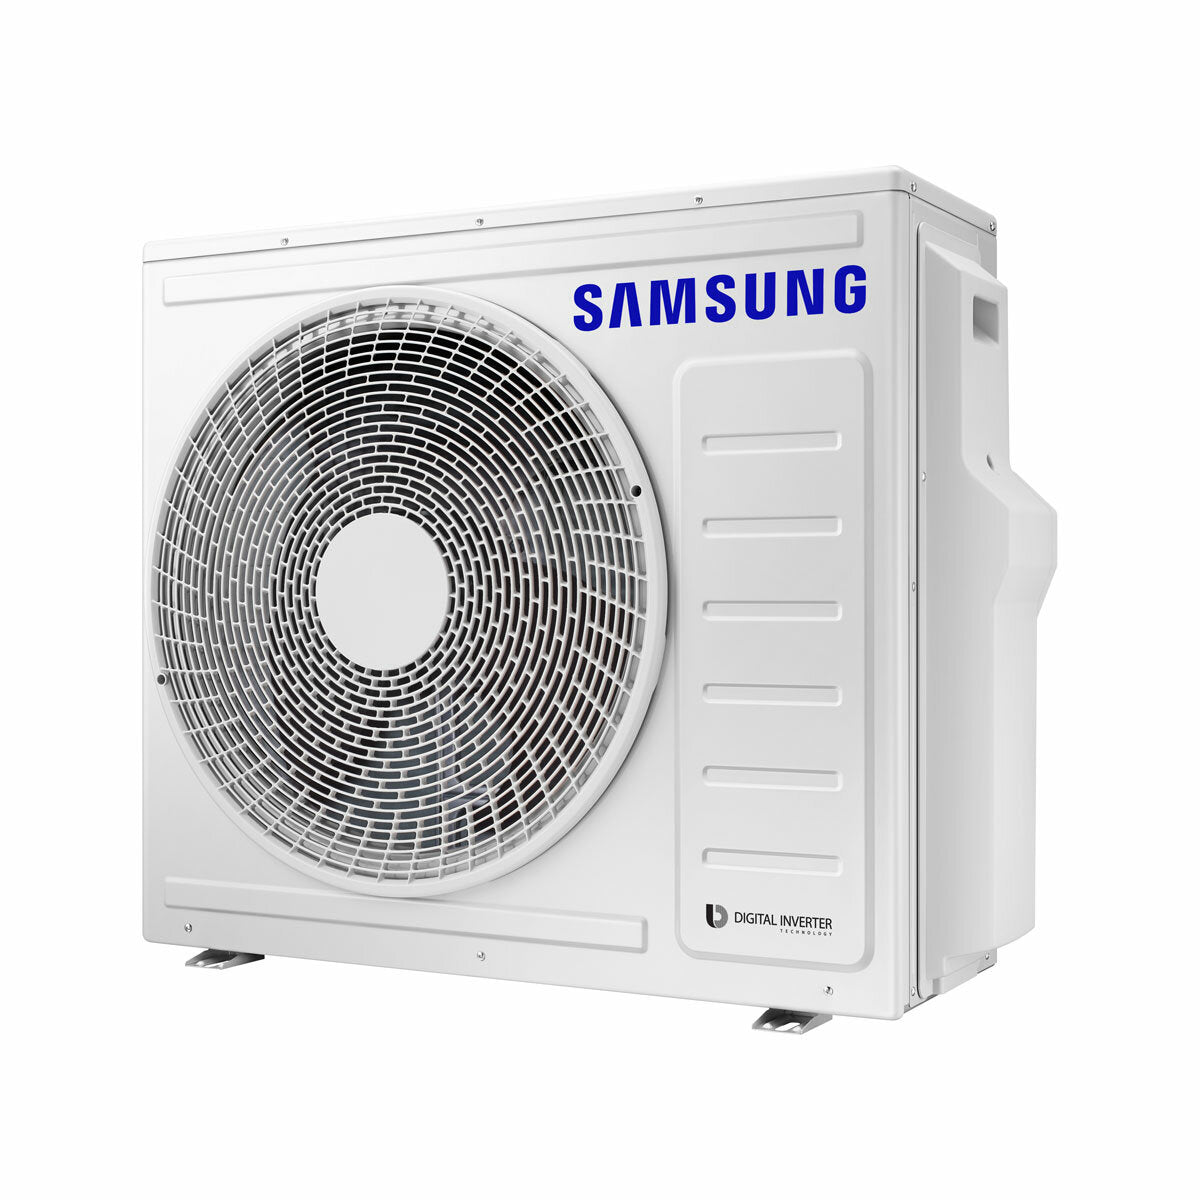 Samsung Cebu Wi-Fi Trial Split Klimaanlage 12000 + 12000 + 12000 BTU Wechselrichter A++ WLAN Außengerät 8,0 kW